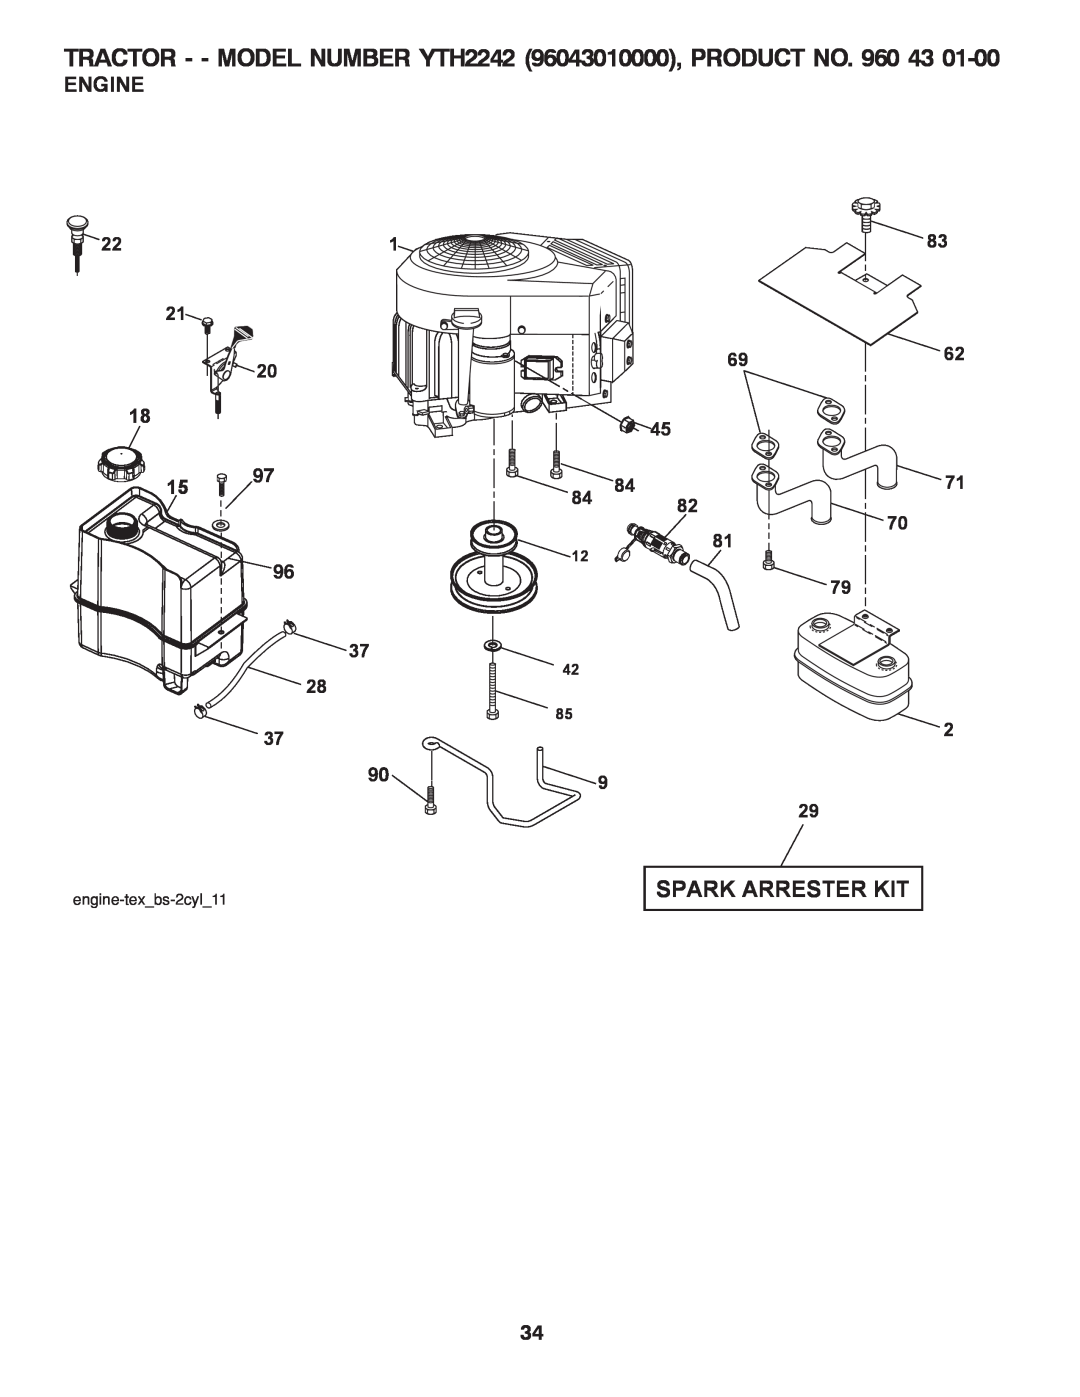 Husqvarna owner manual Engine, TRACTOR - - MODEL NUMBER YTH2242 96043010000, PRODUCT NO. 960 43, Spark Arrester Kit 